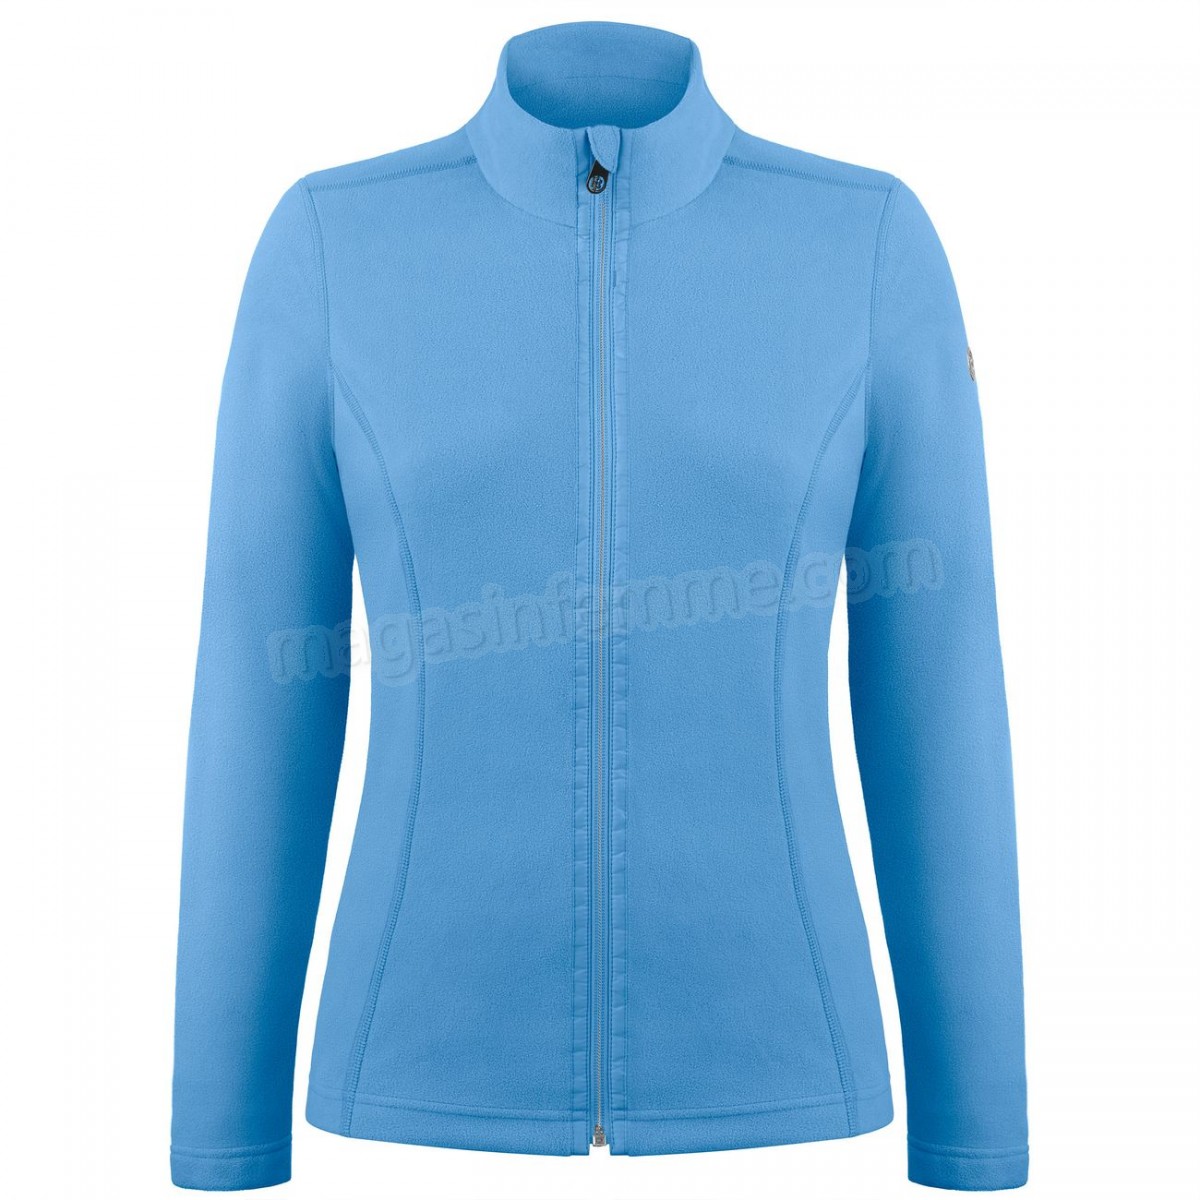 Poivre Blanc-Sports d'hiver femme POIVRE BLANC Veste Polaire Poivre Blanc Fleece Jacket 1500 Polar Blue Femme en solde - -1